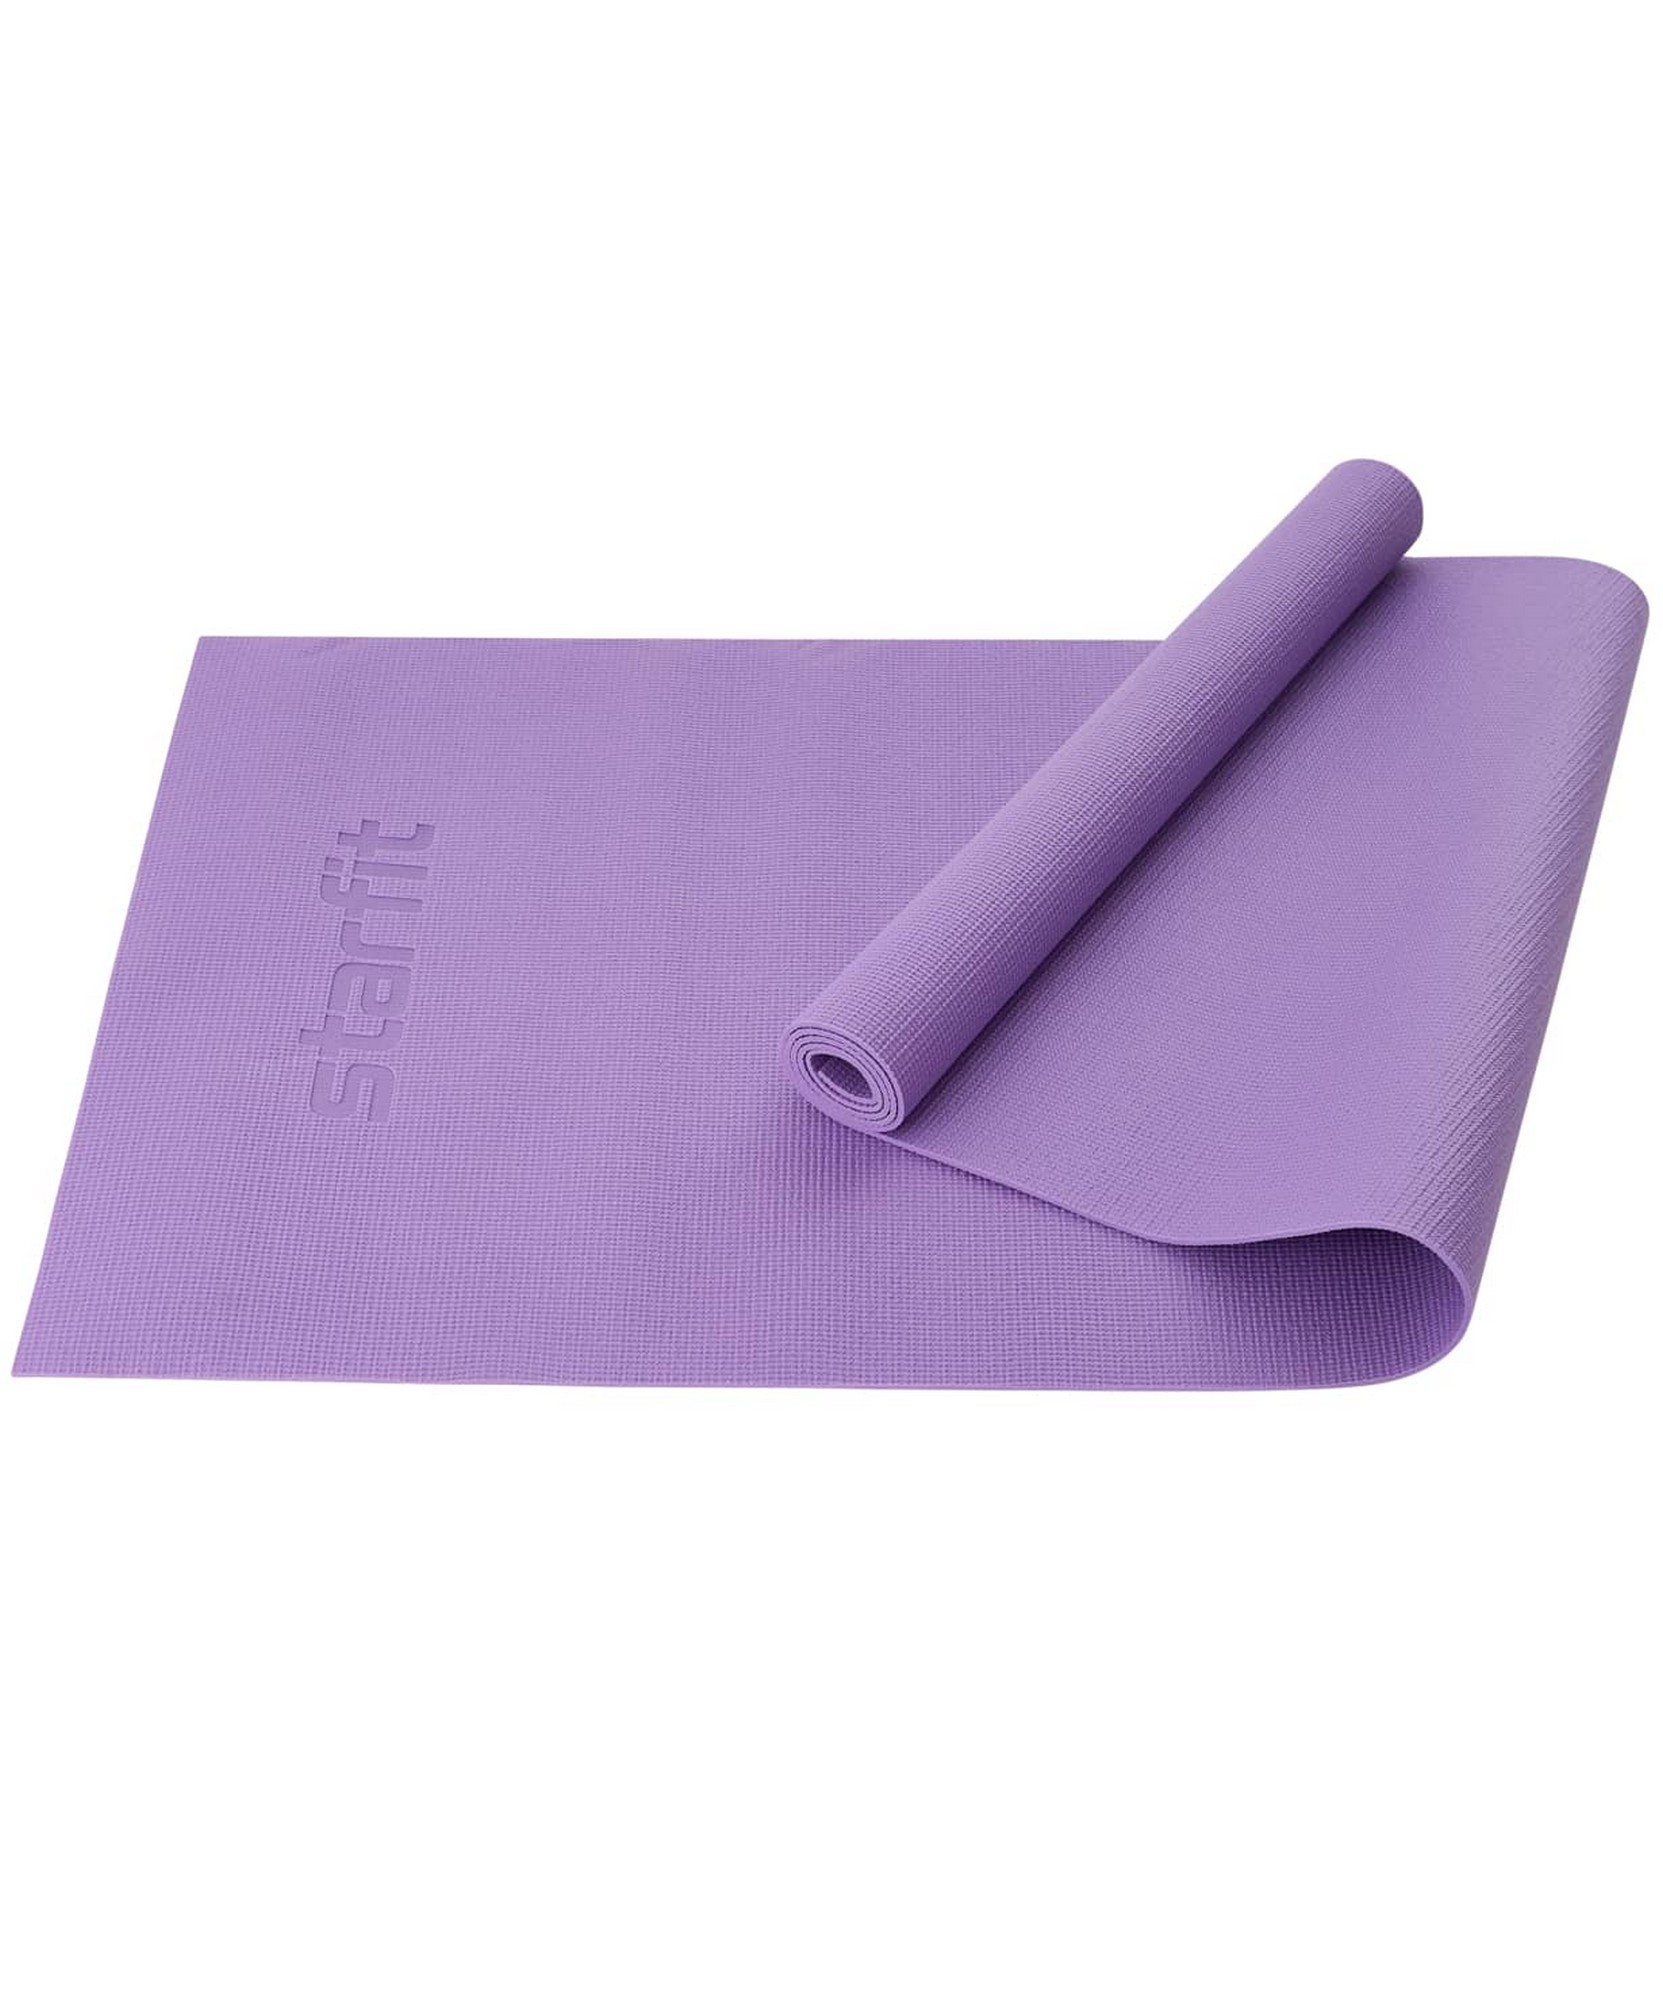 Коврик для йоги и фитнеса 183x61x0,3см Star Fit PVC FM-101 фиолетовый пастель - фото 1